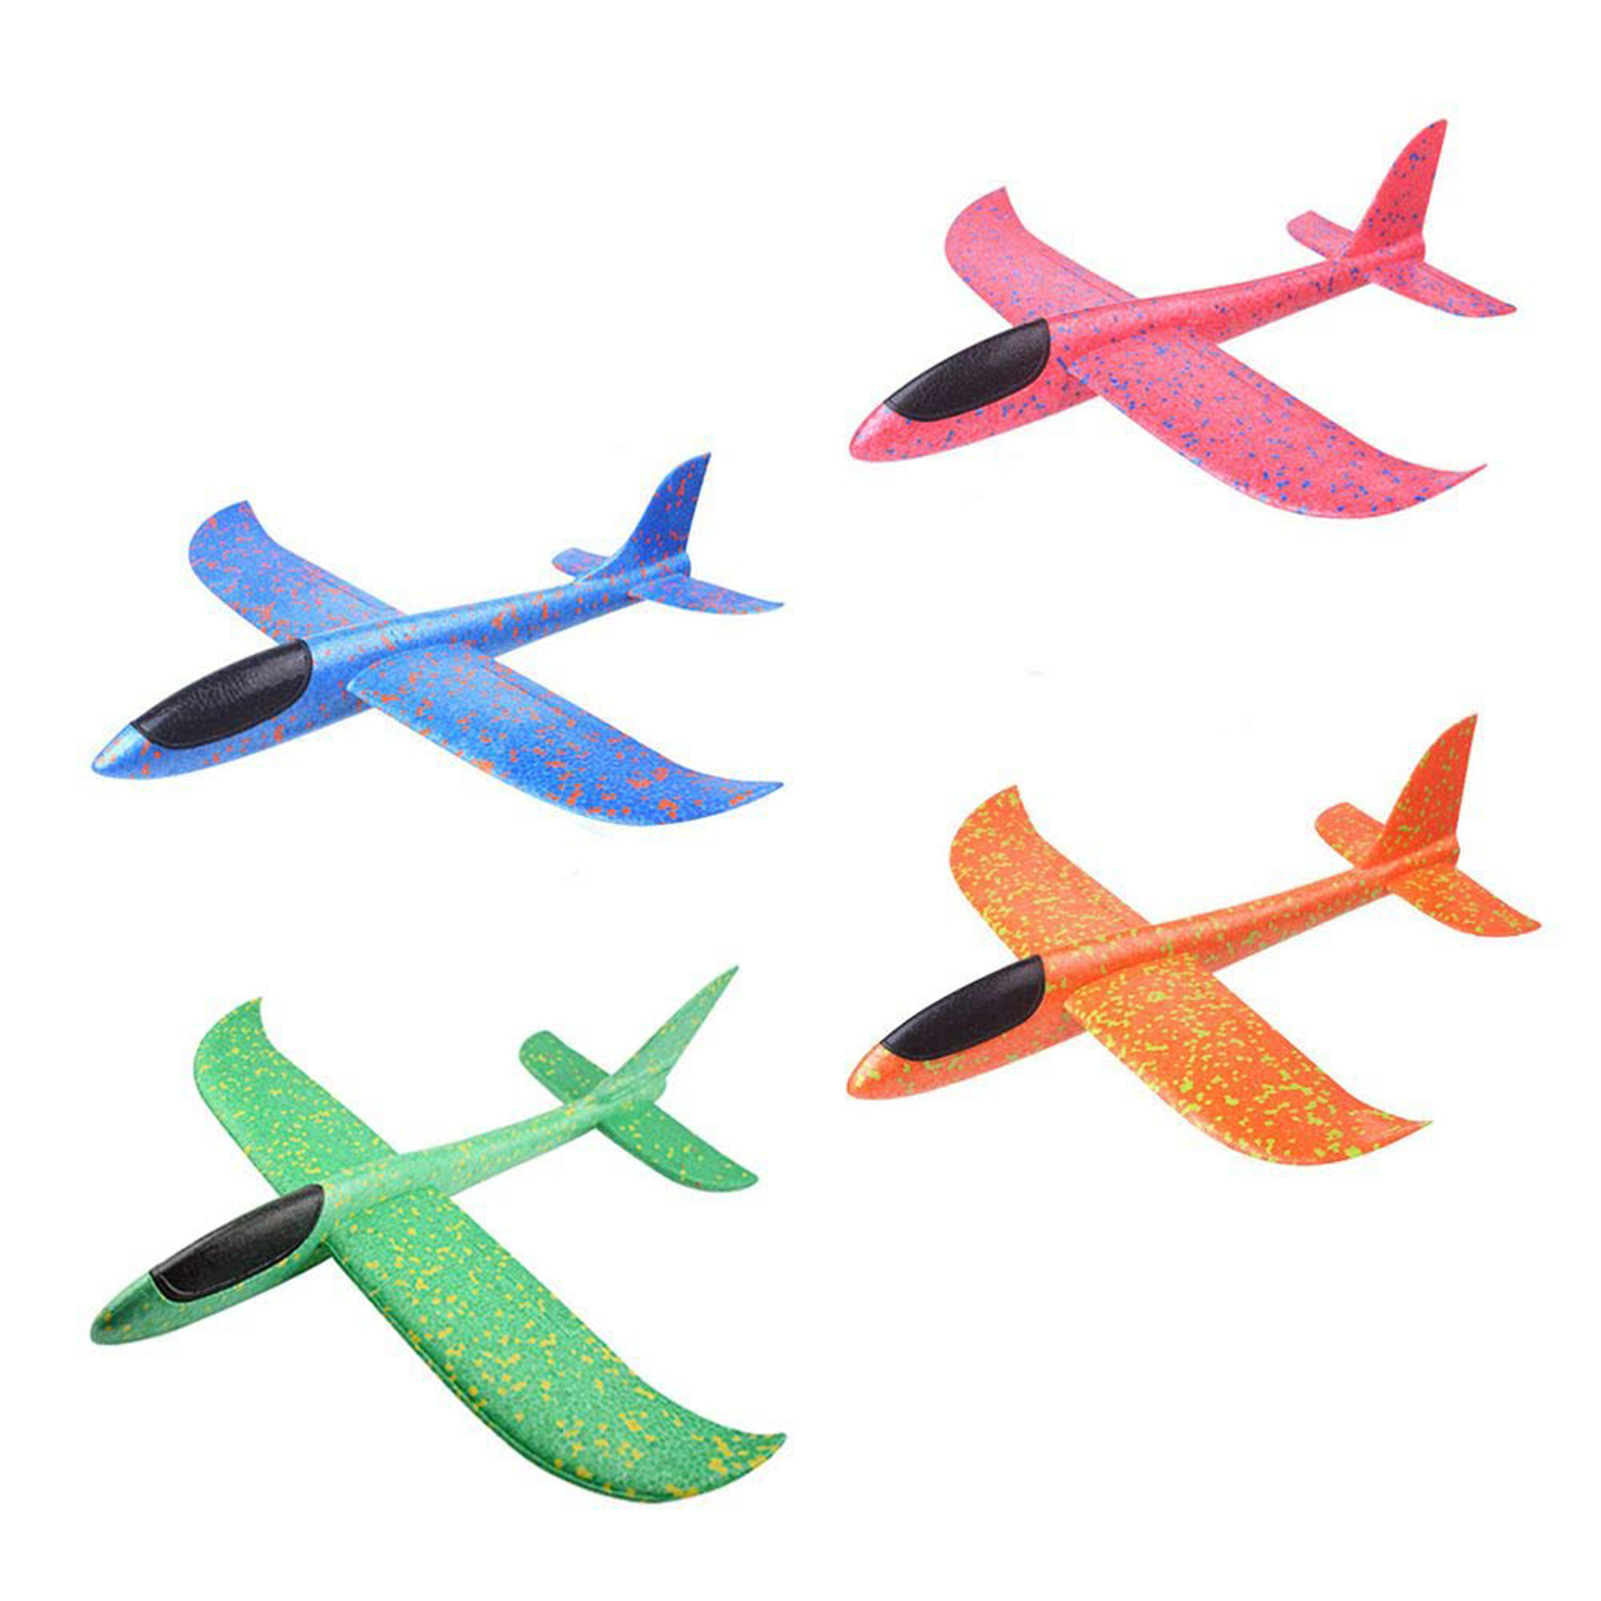 Children Hand Launch Throwing Glider Epp Foam Airplane Plane Model Outdoor Toy 